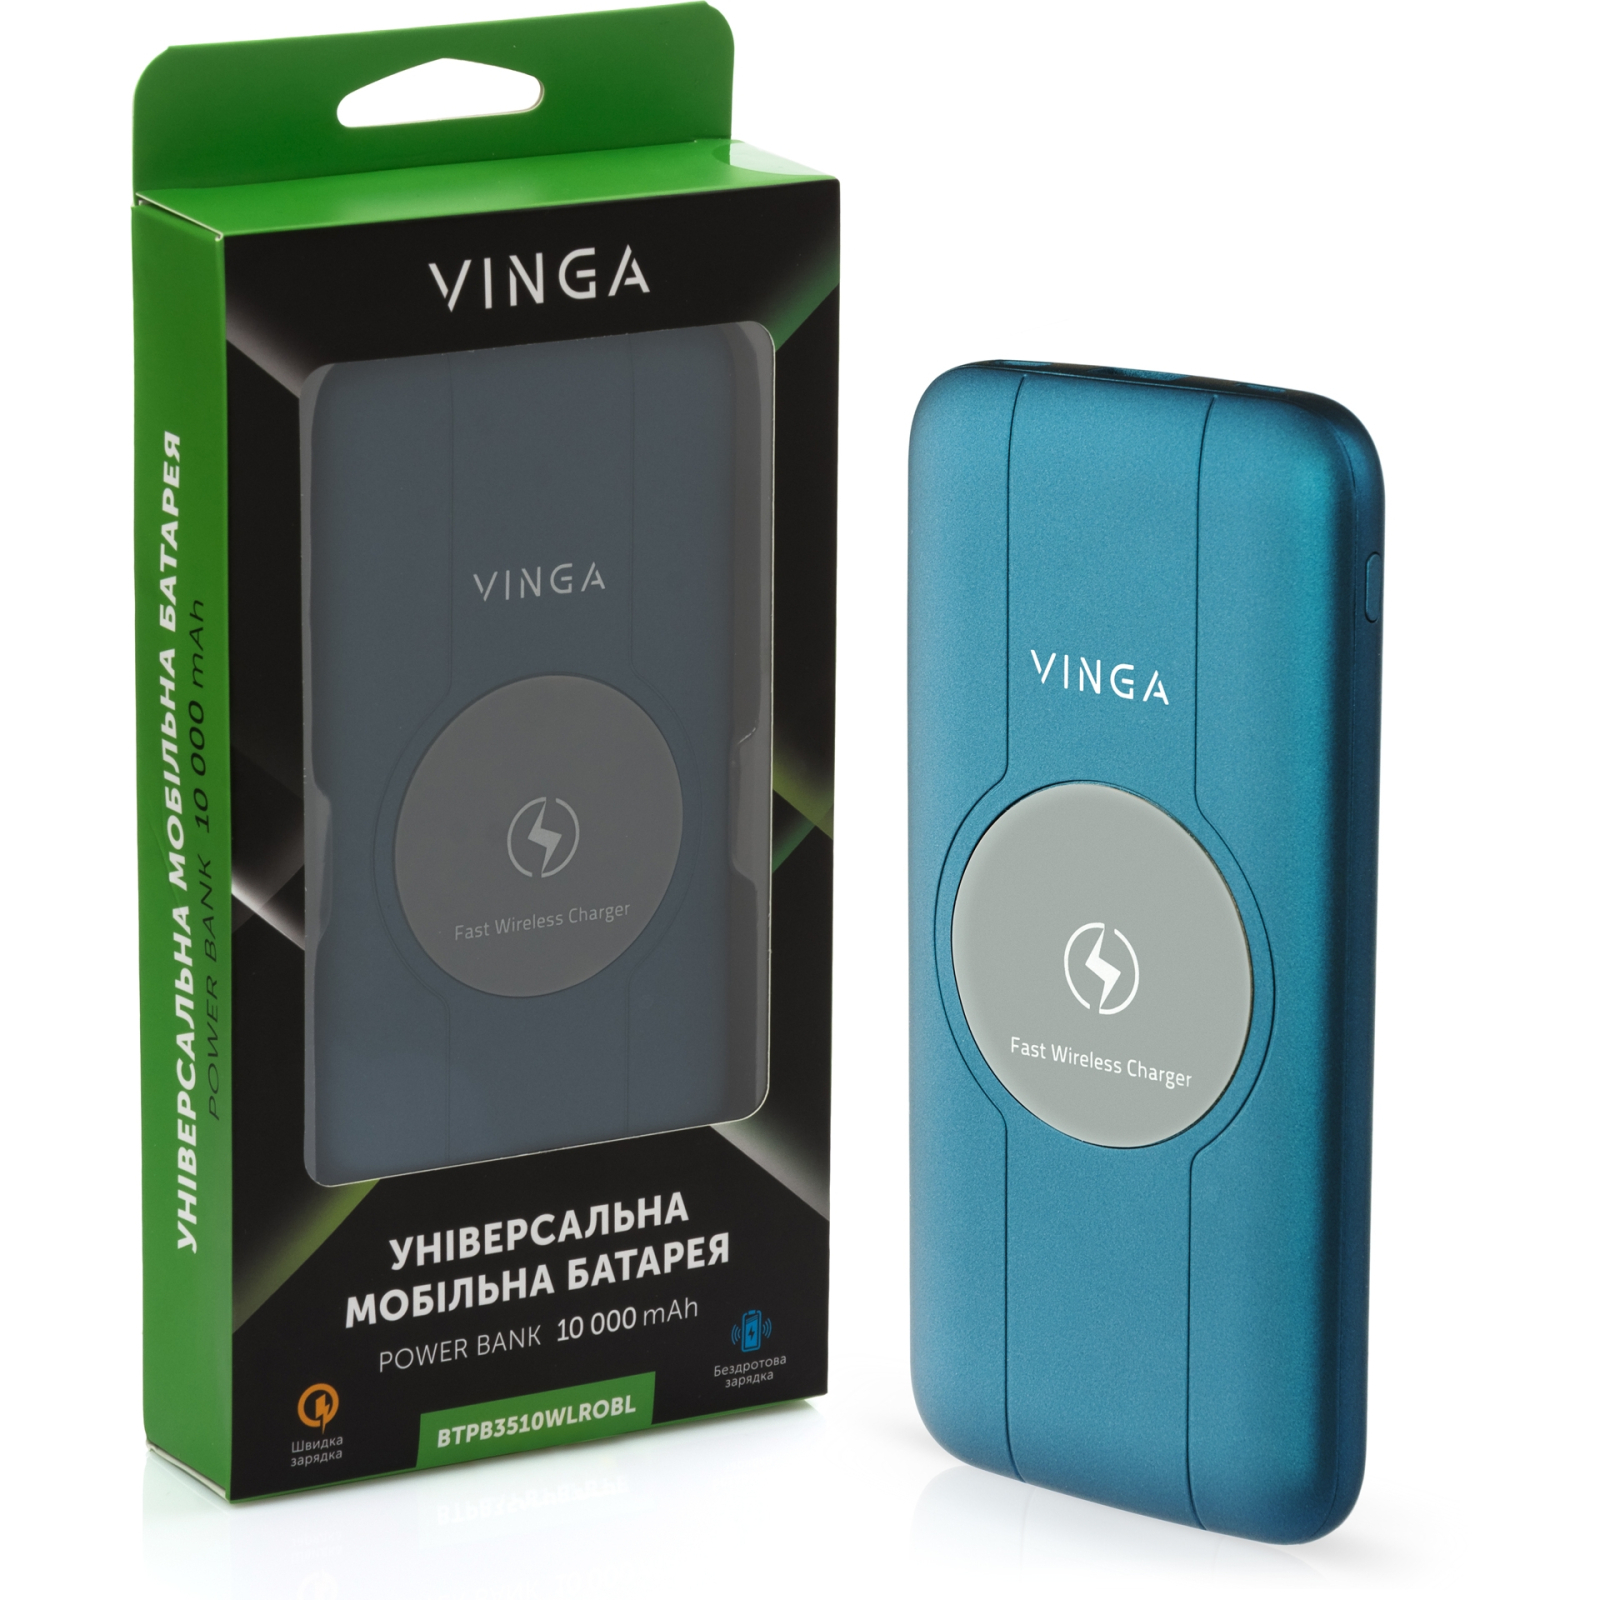 Батарея универсальная Vinga 10000 mAh Wireless QC3.0 PD soft touch blue (BTPB3510WLROBL) изображение 5